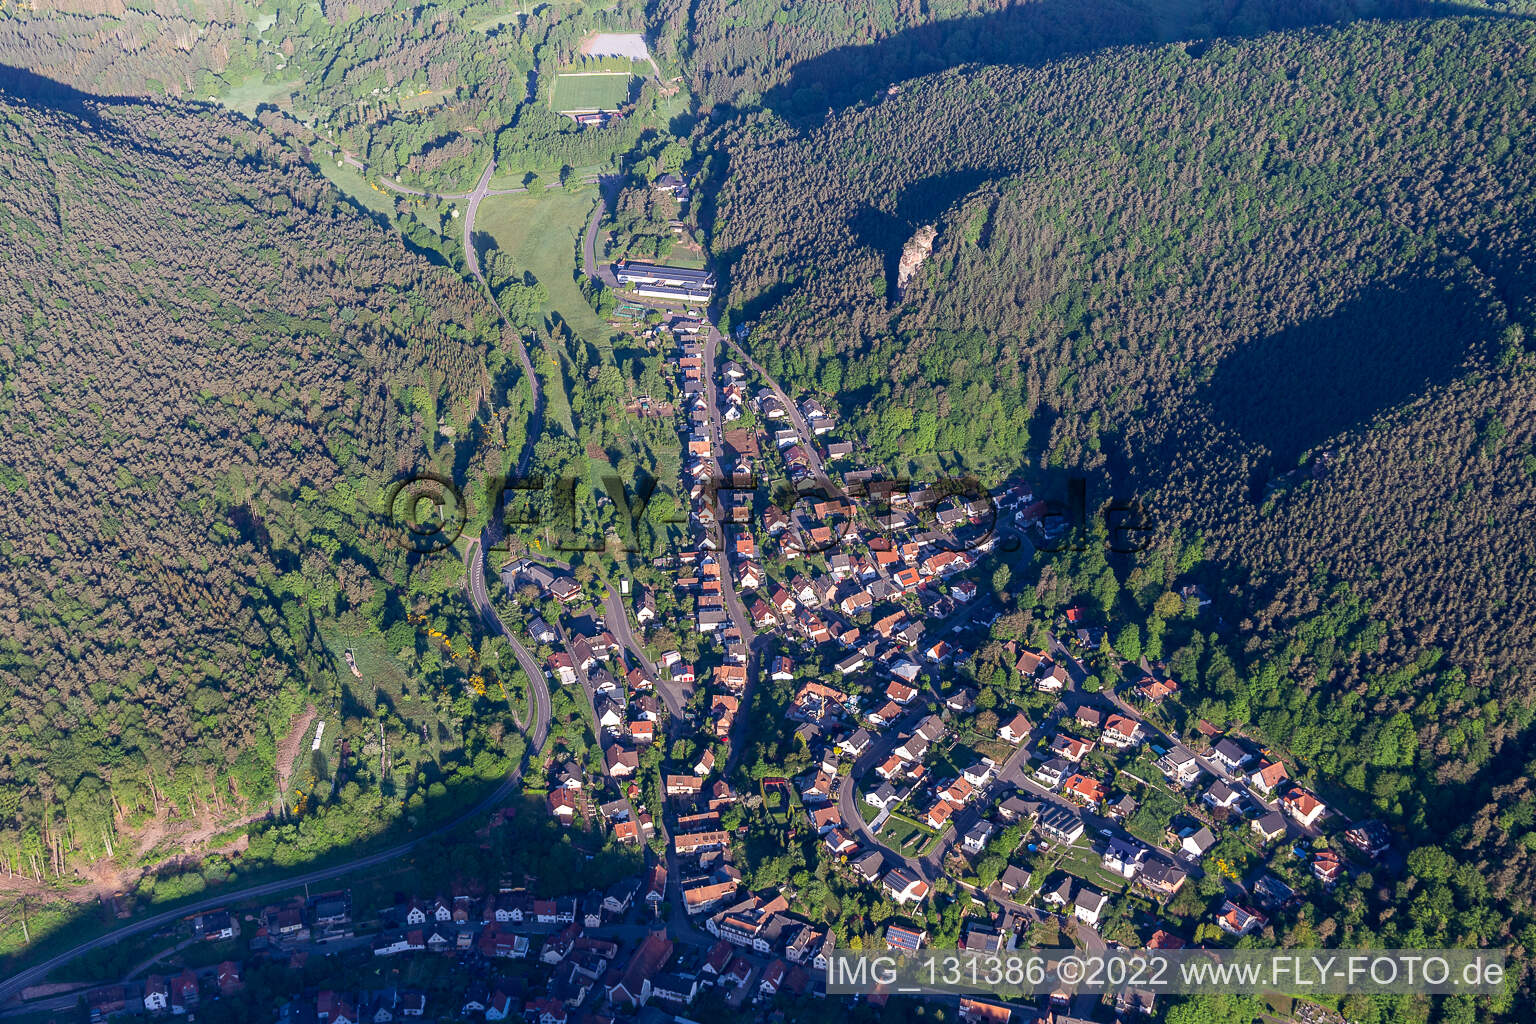 Lug im Bundesland Rheinland-Pfalz, Deutschland aus der Drohnenperspektive